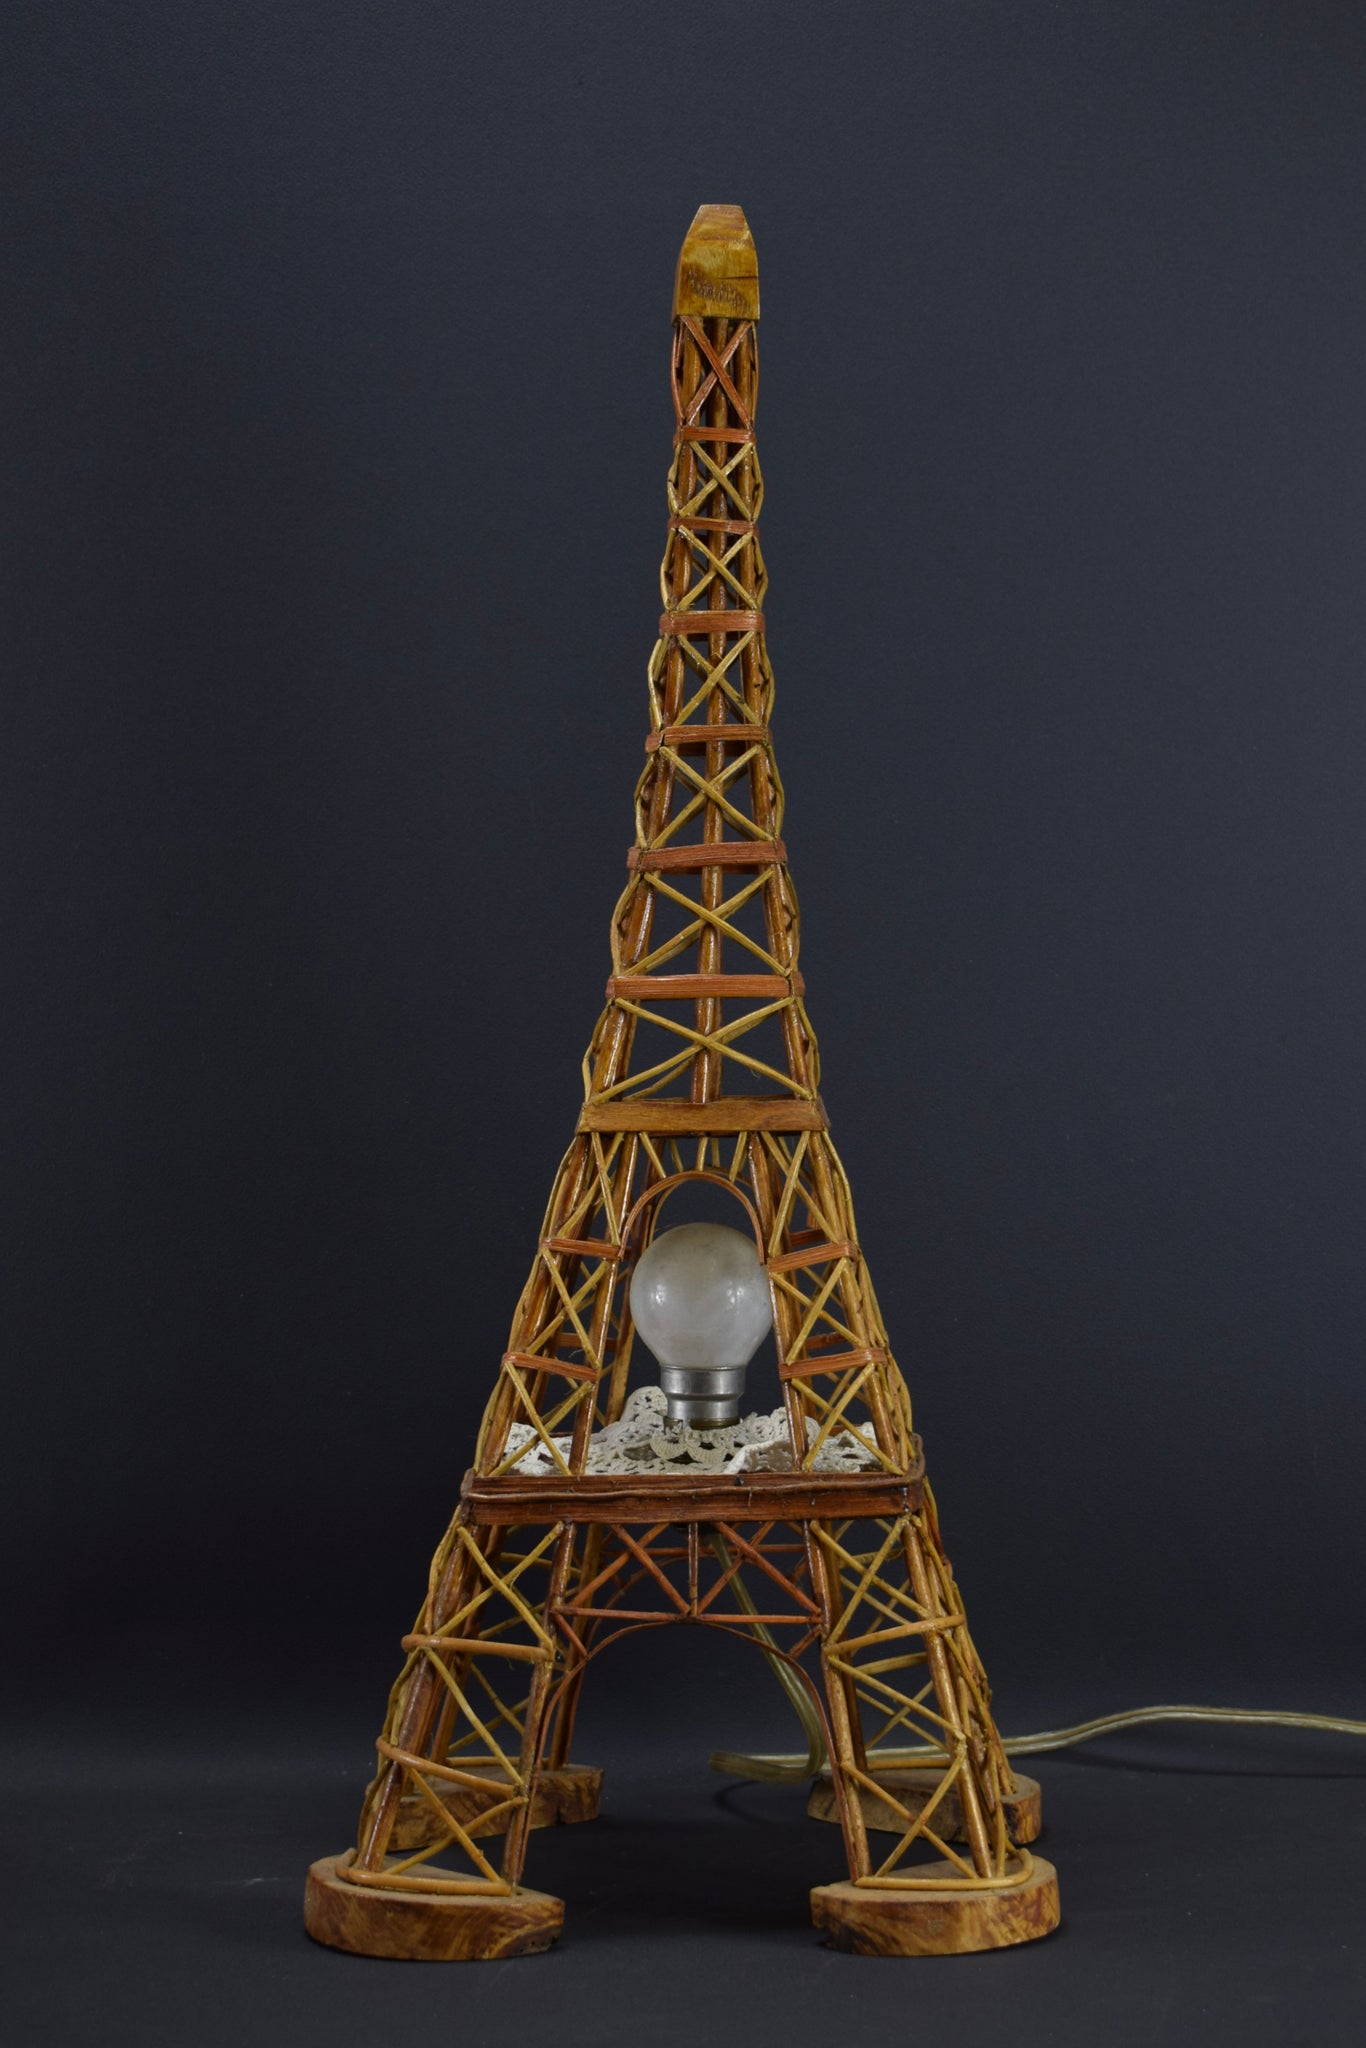 Eiffel Tower Wood Statue Lamp, France Souvenir Building Architectural Model, Parisian Landmark